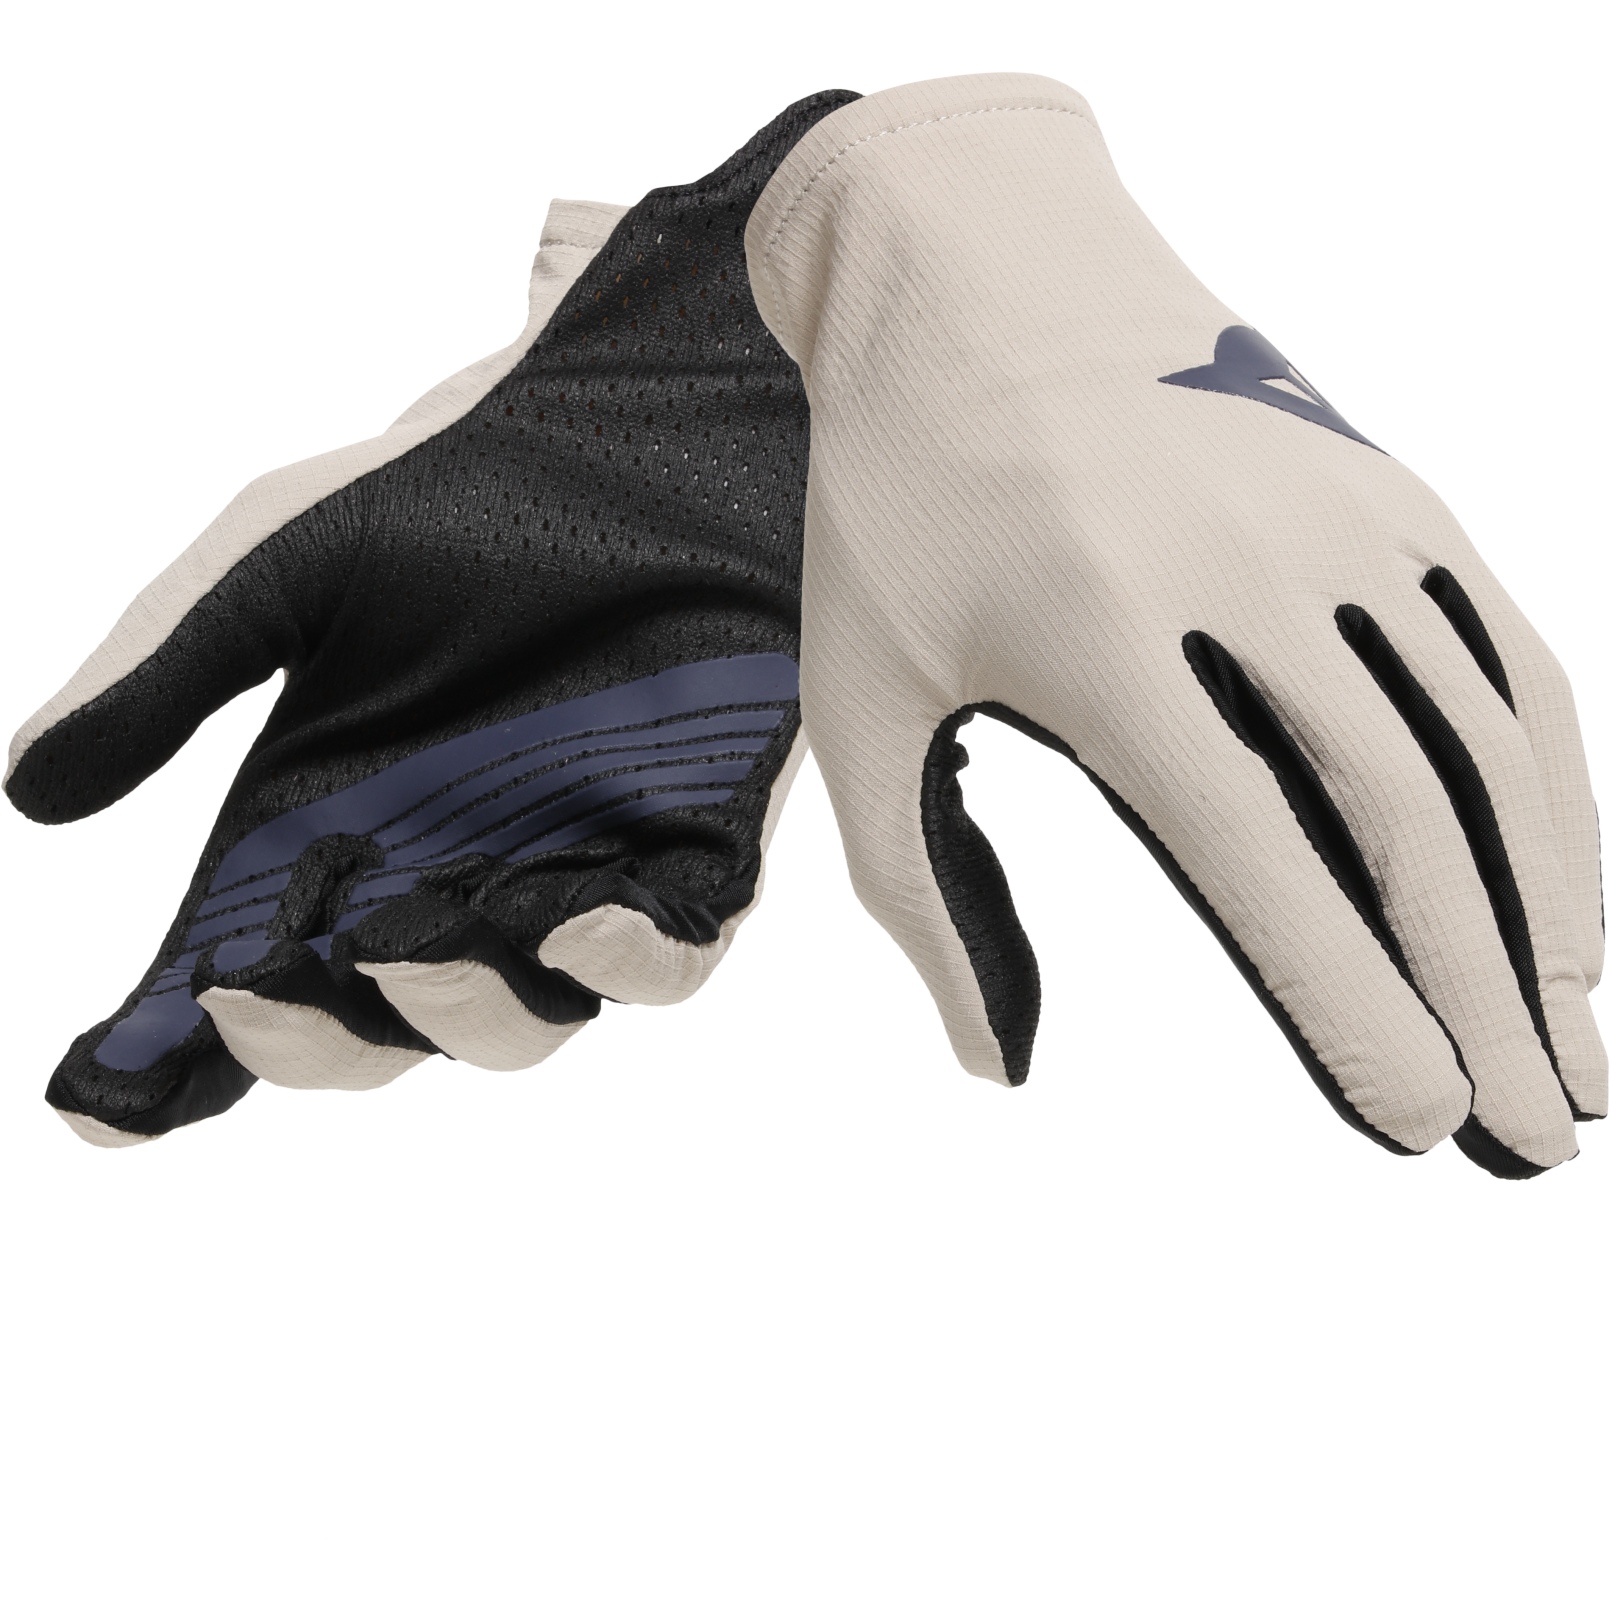 Productfoto van Dainese HGL MTB Handschoenen - sand